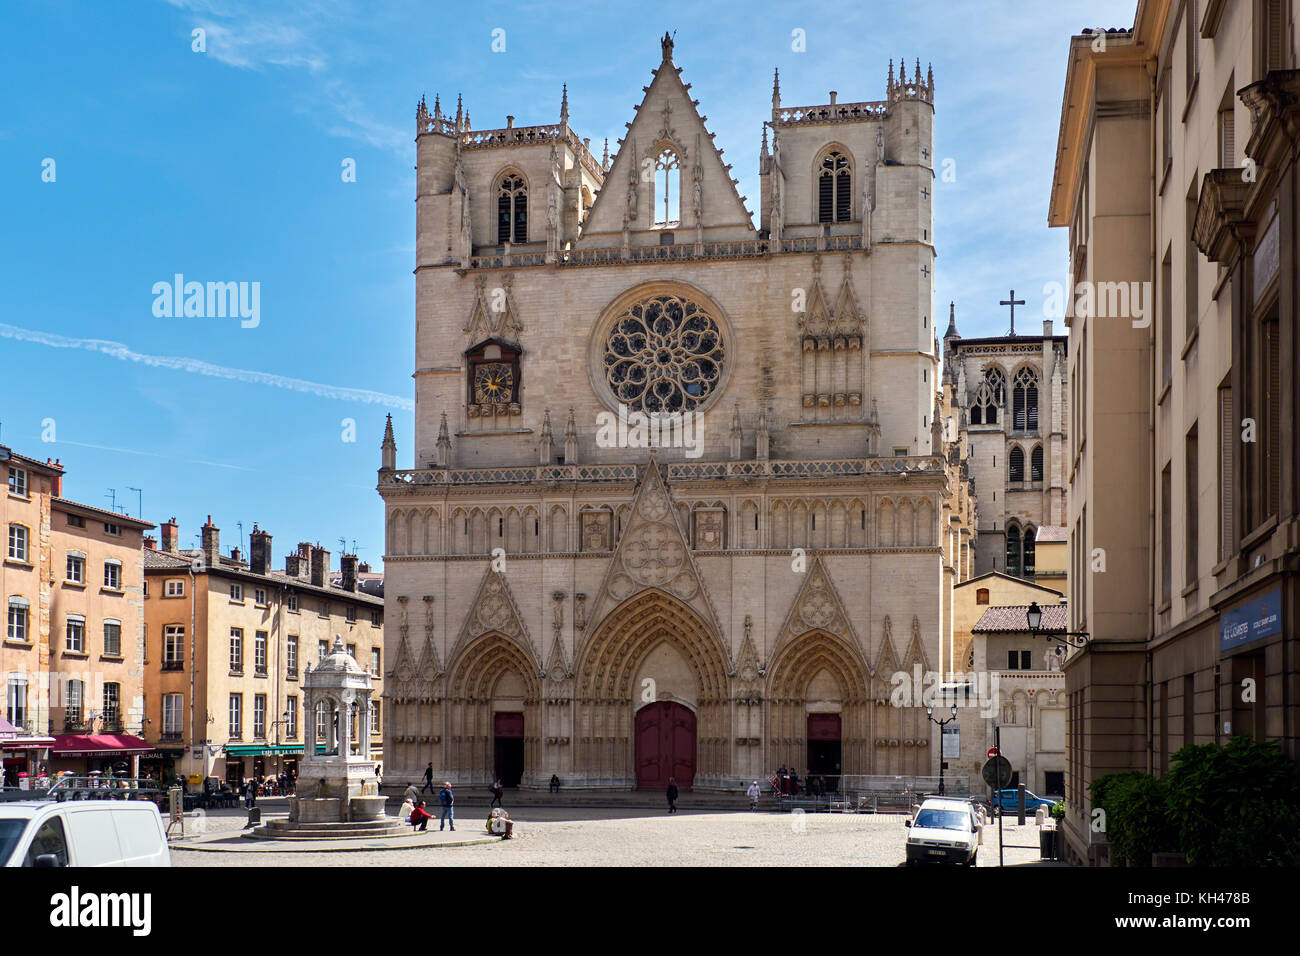 La Cathédrale de Lyon à la place Saint-Jean, Lyon, France Banque D'Images